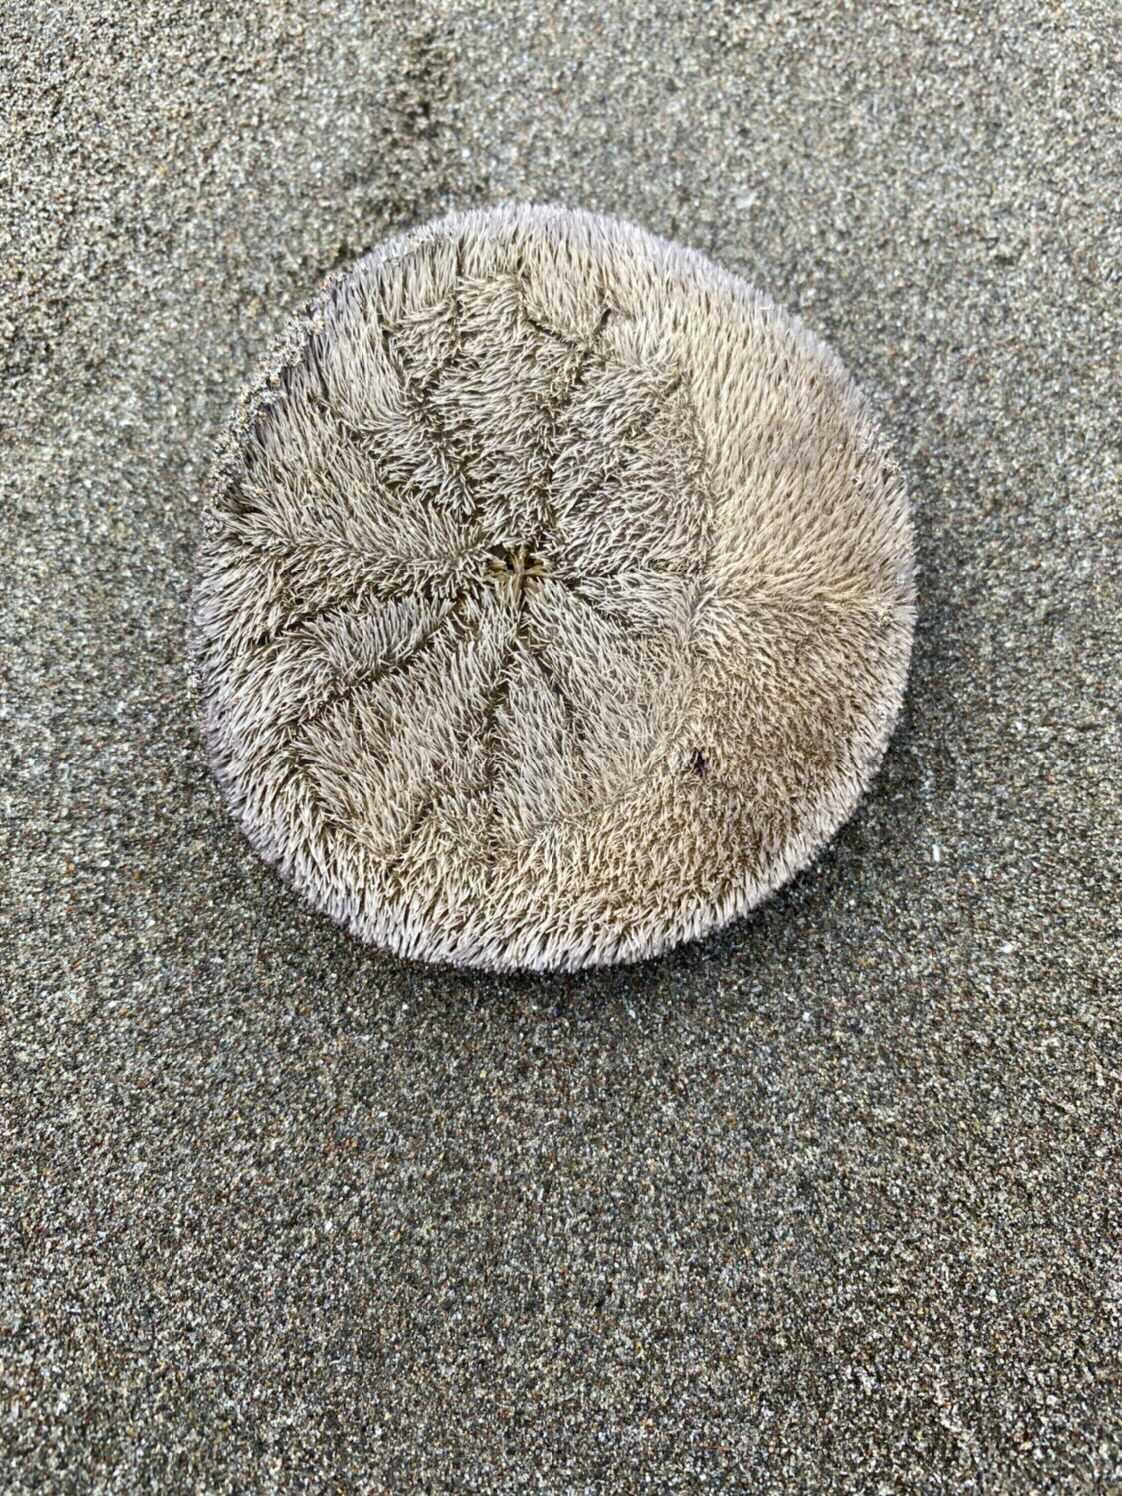 ANTIGUA Sand Dollar Made with Sand Tropical Beach Ornament